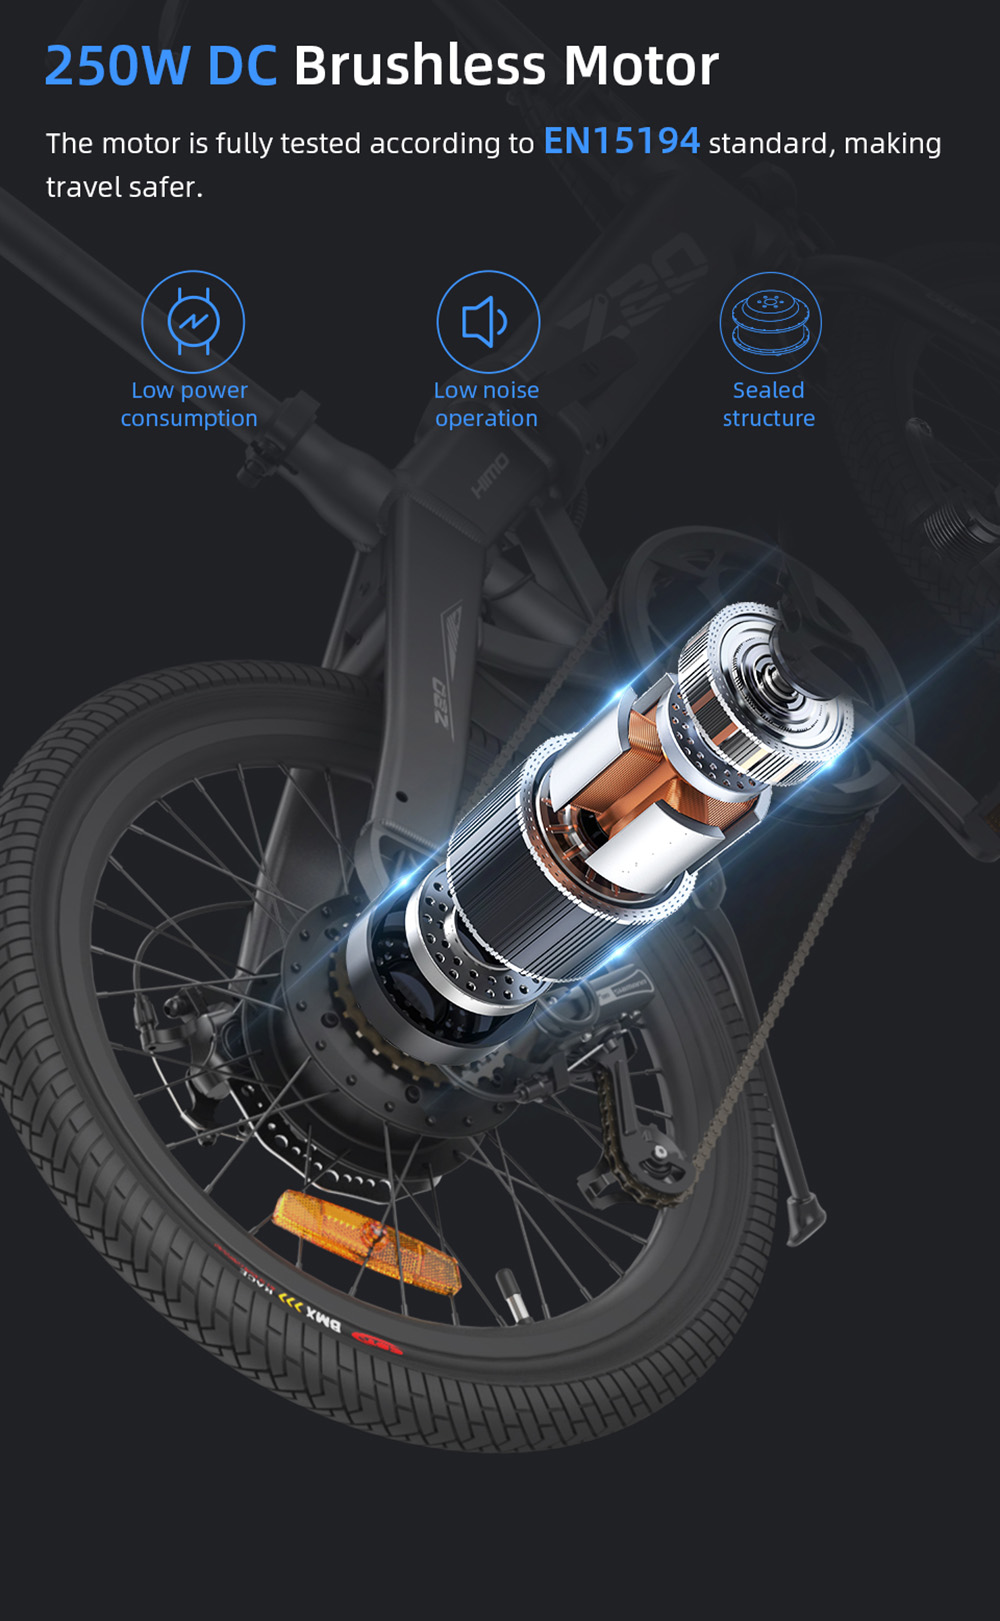 دراجة كهربائية HIMO Z20 Max 250W محرك 20 بوصة تصل إلى 25 كم / ساعة مع دواسة خانق ووضع المساعدة الإلكترونية في جميع الأحوال الجوية - أبيض